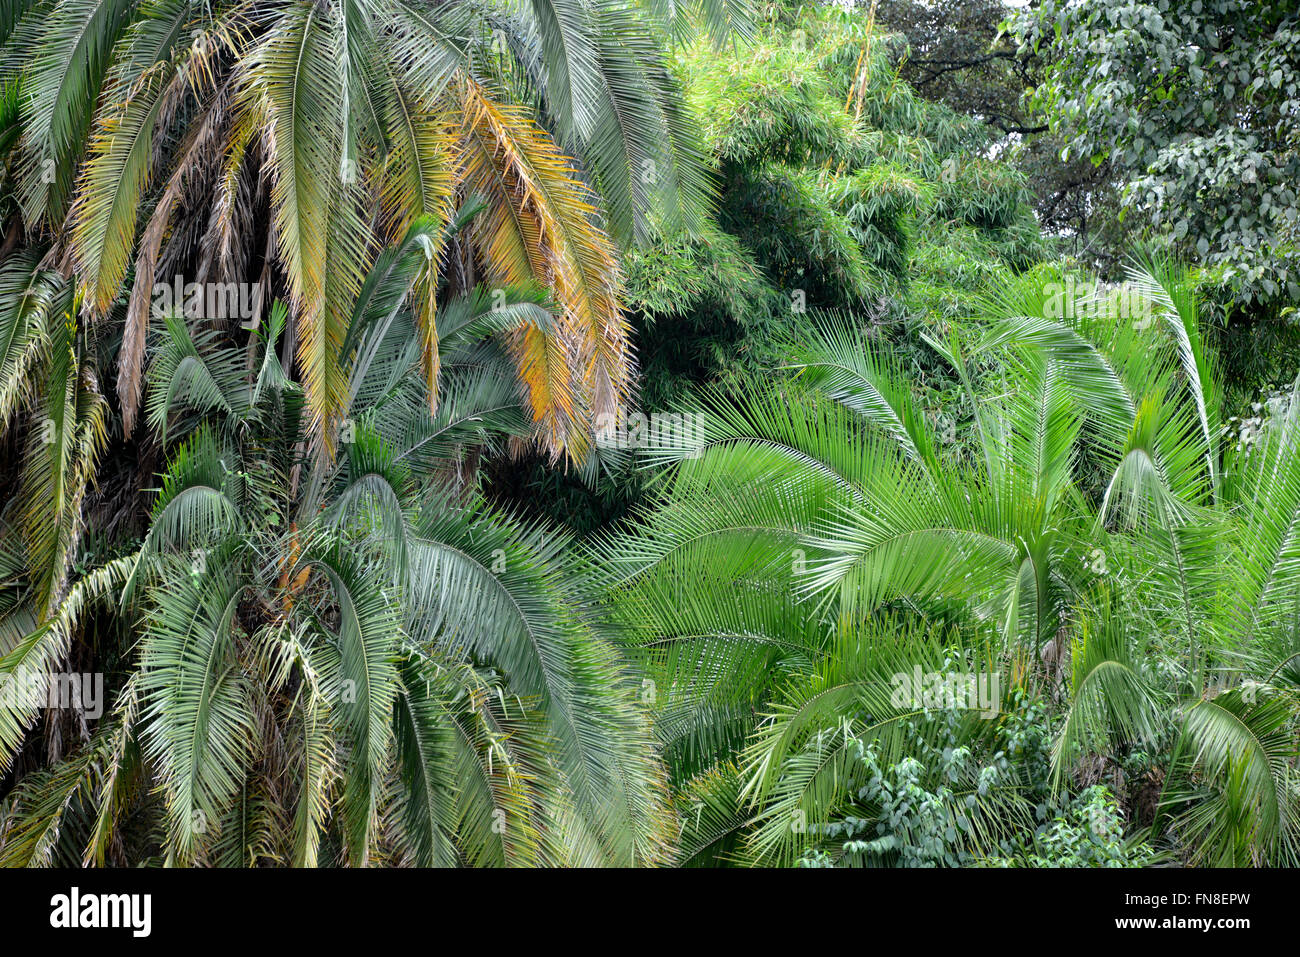 África: Kenia: Nairobi: frondosos árboles y palmeras en Westlands Nairobi Foto de stock